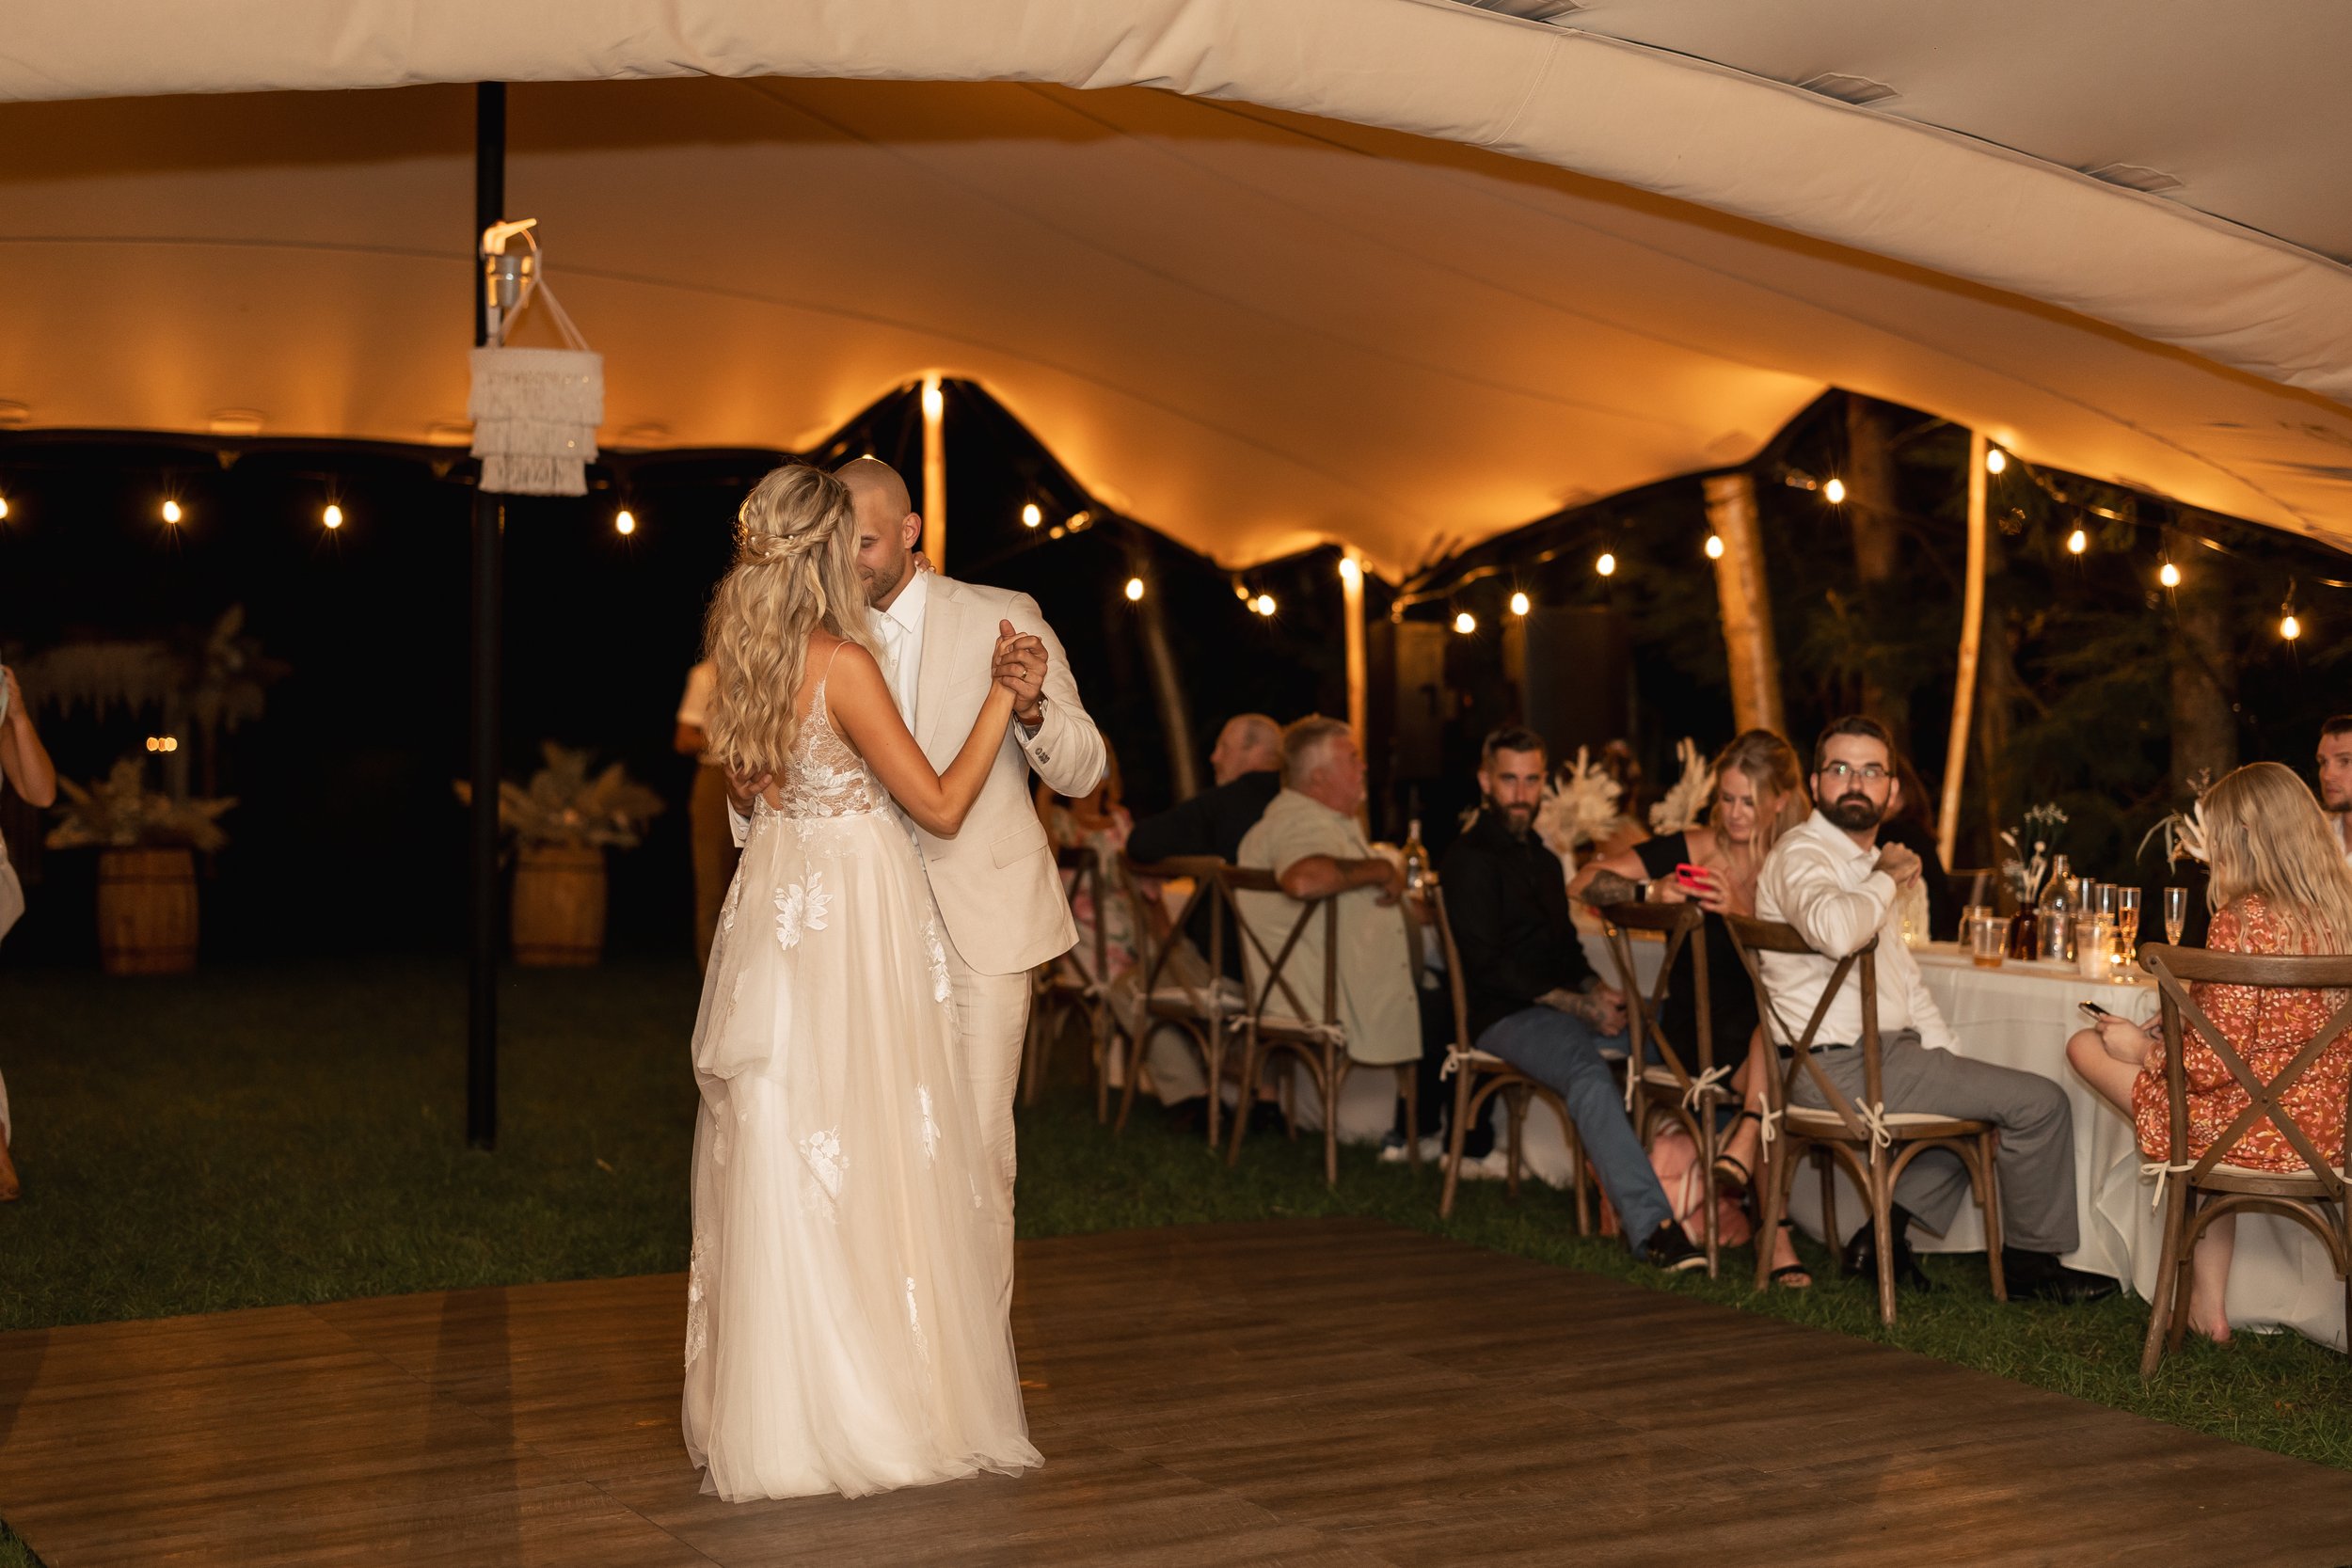 stretch-tent-rental-dancing-outdoor-wedding.jpg